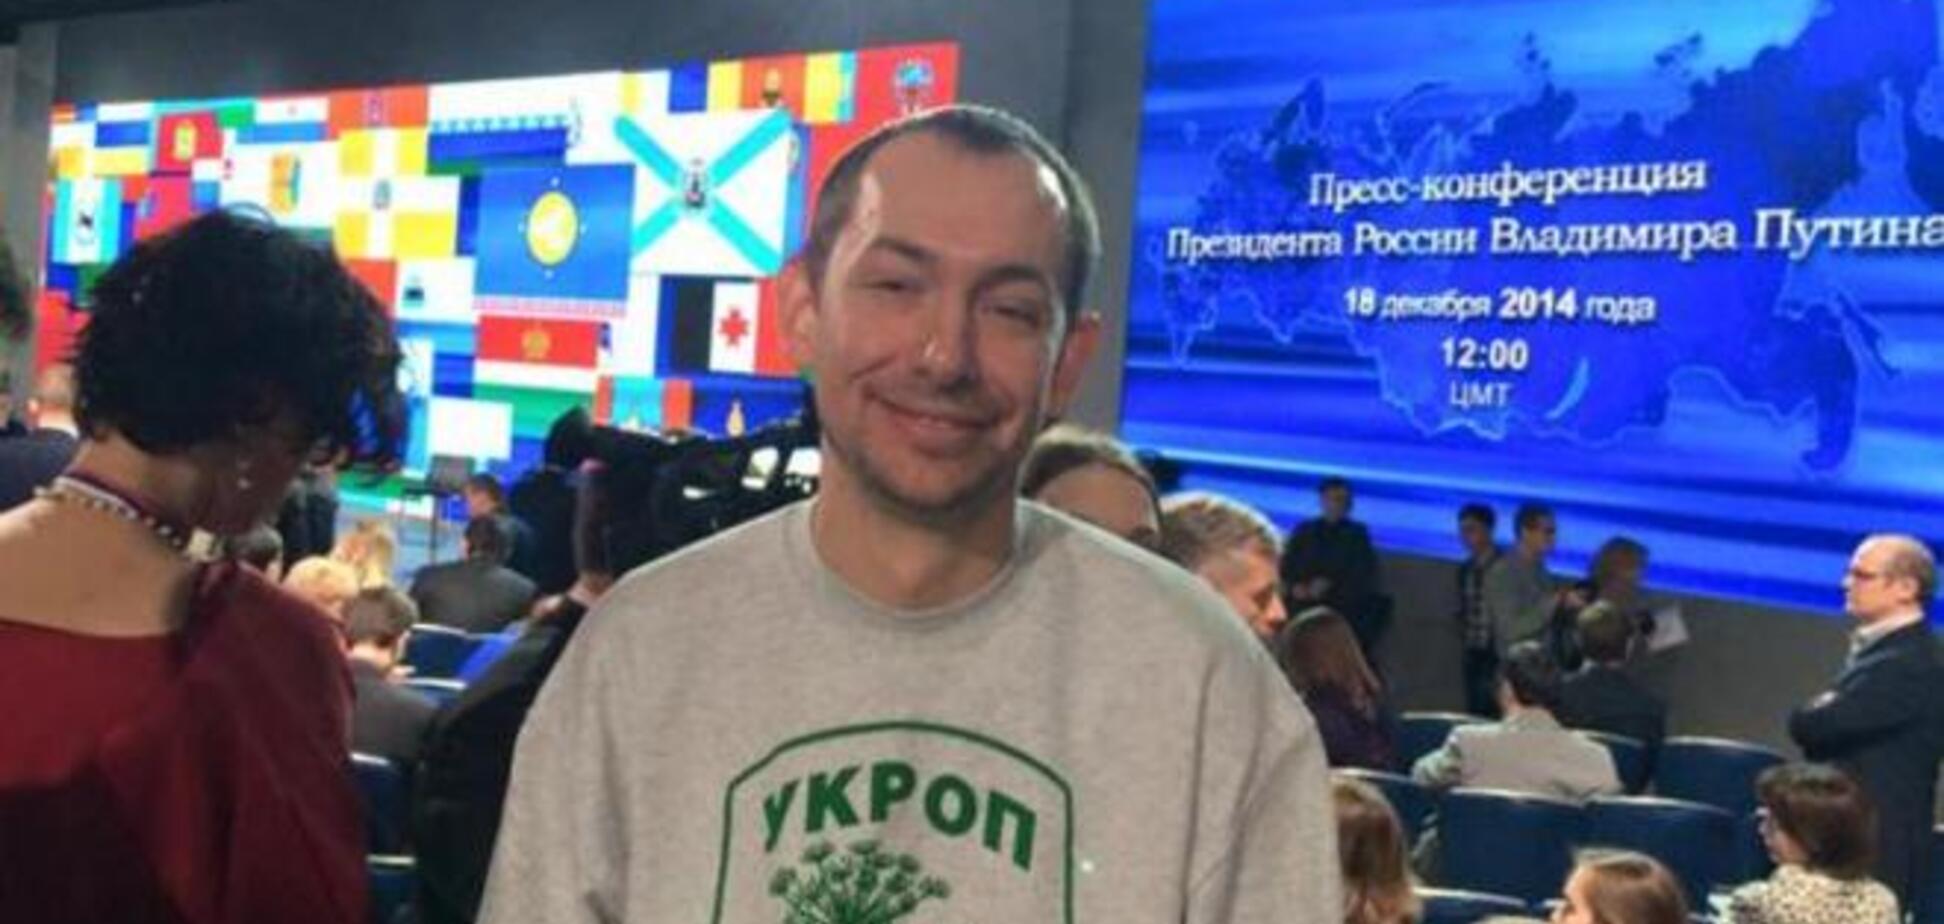 Український журналіст прийшов на прес-конференцію Путіна у футболці з написом 'Укроп'